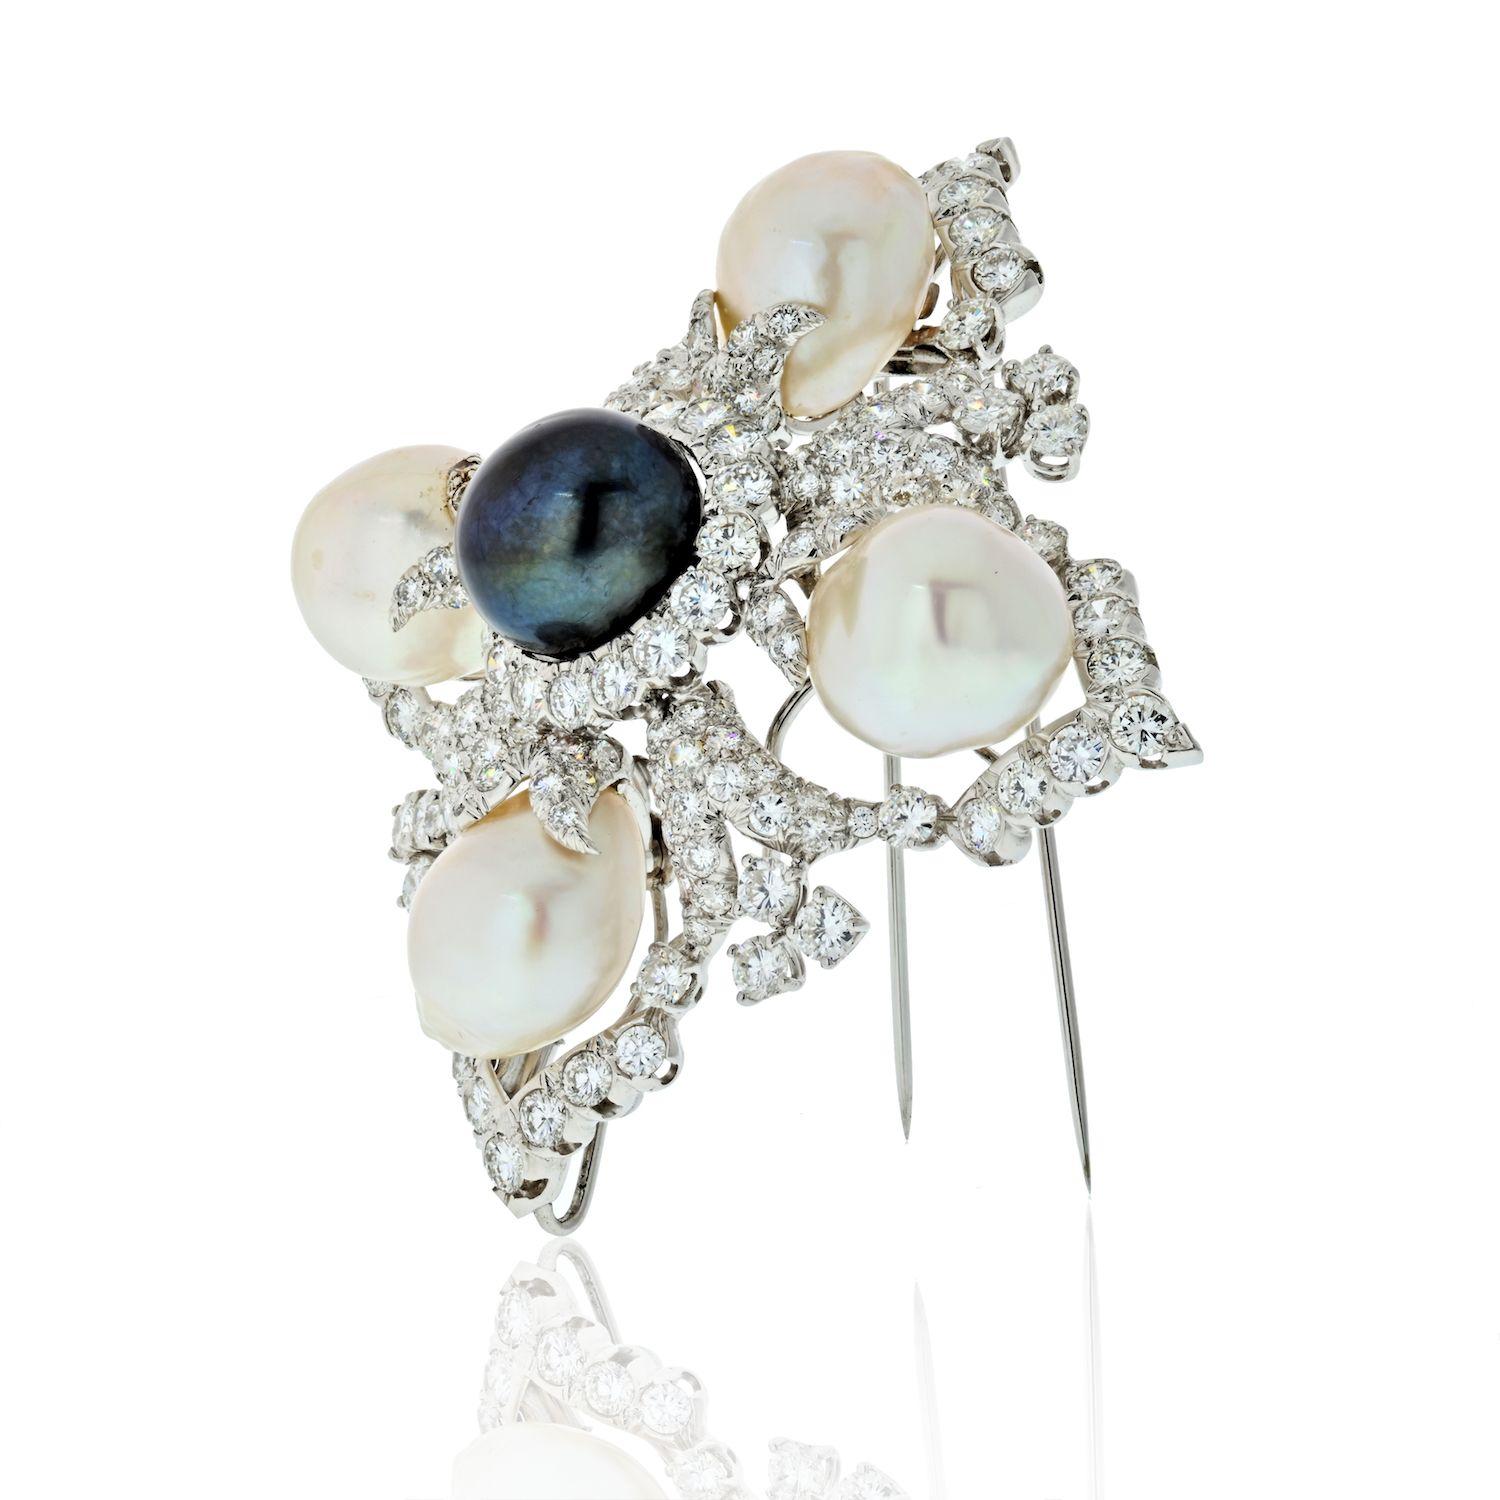 Clip-broche David Webb en platine, perle de culture baroque noire et des mers du Sud et diamant en forme de croix de Malte. 
Centrant une perle noire ap. 15.0 mm, entourée de 16 diamants ronds, divisée en quatre par 4 perles blanches d'ap. 15.6 à